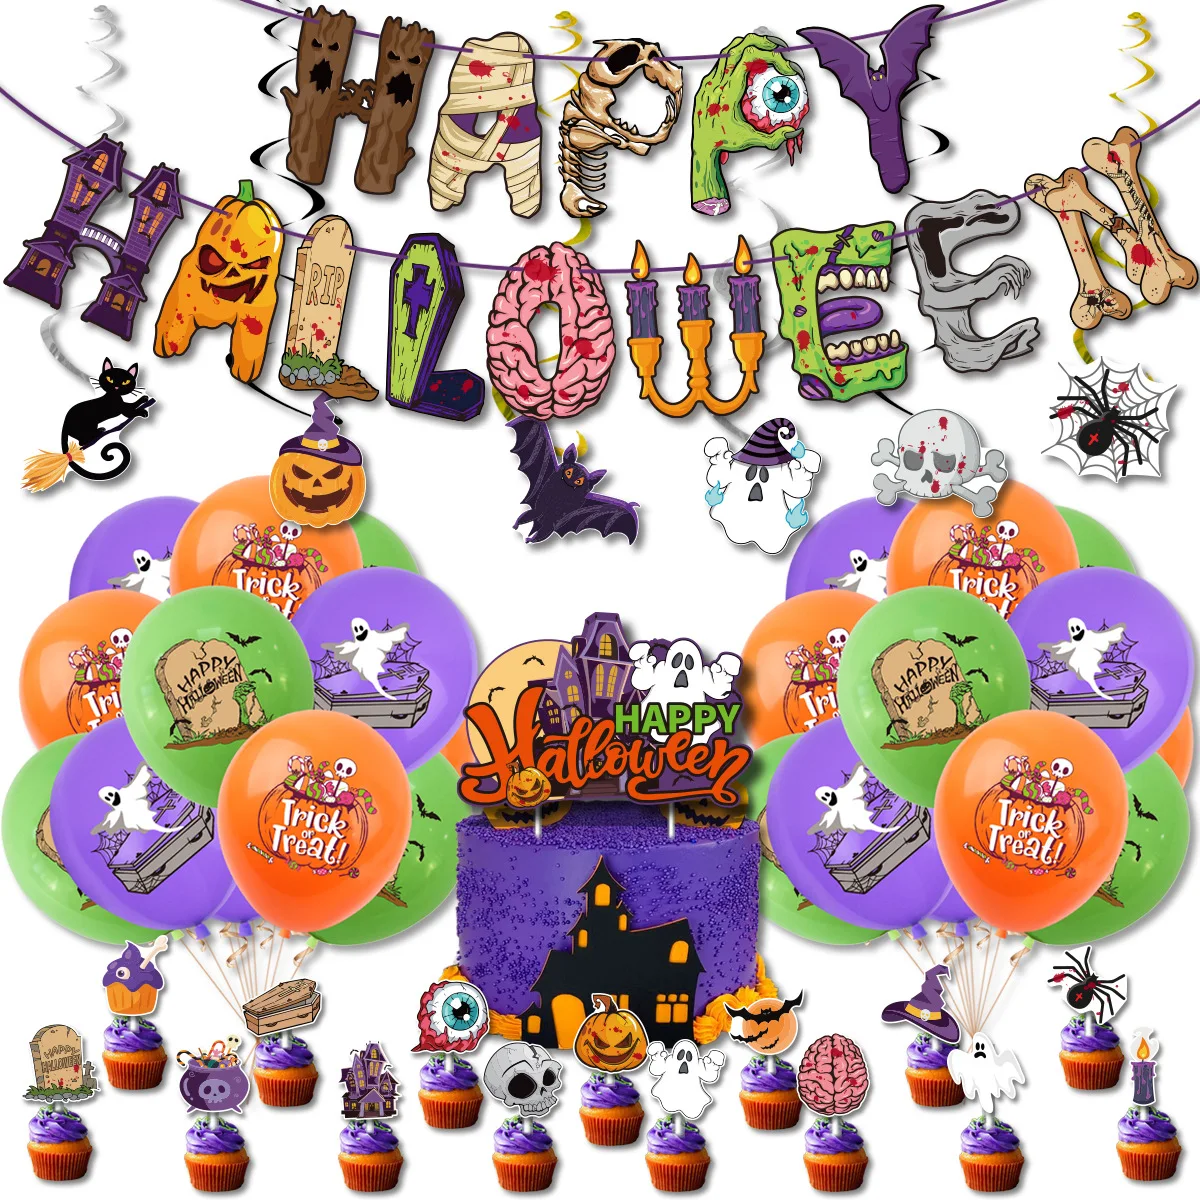 

Набор воздушных шаров на Хэллоуин, тыква, призрак, украшения на Хэллоуин, паук, воздушные шары, баннер, торт, Топпер, летучая мышь, Globos, товары для Хэллоуина